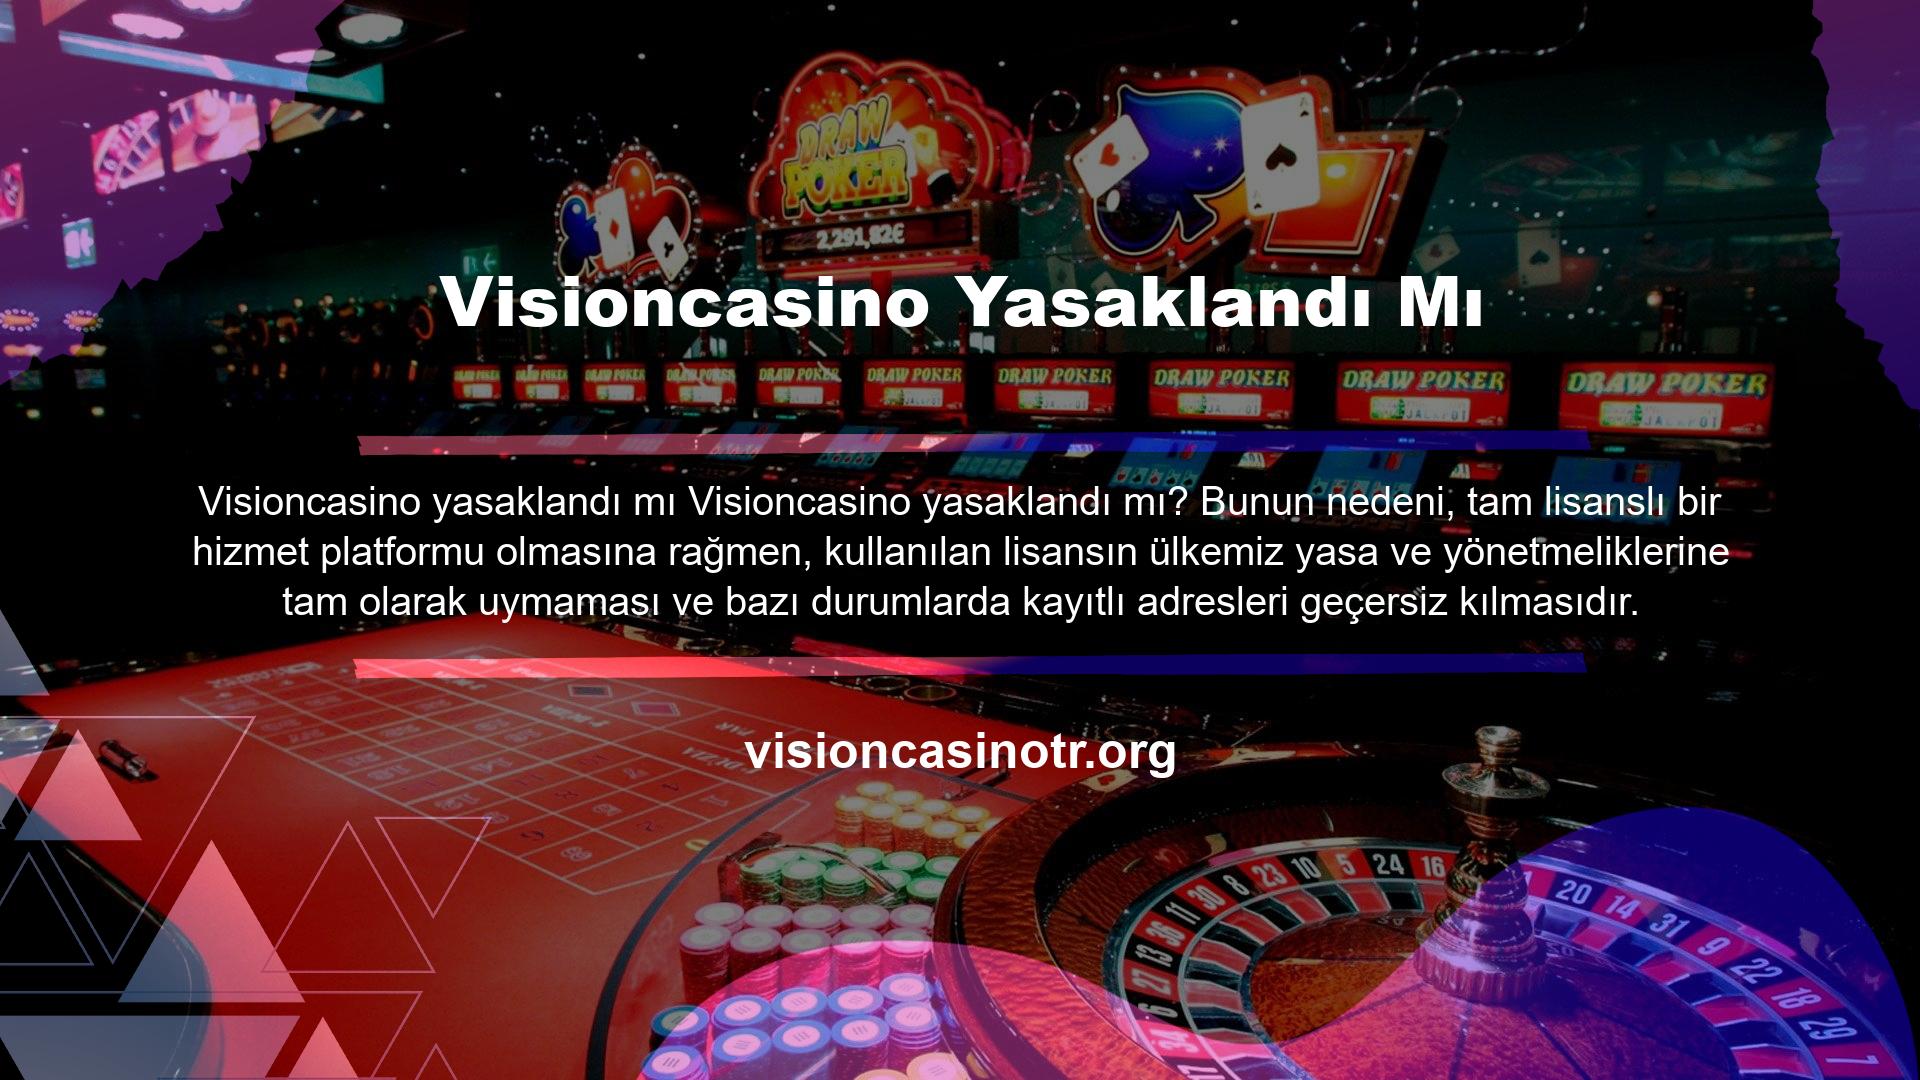 Bu durum Visioncasino kaynaklanmadığından kullanıcılara herhangi bir zarar gelmeyecek olup, Visioncasino bağlanamayan kullanıcılara bilgi verilecektir